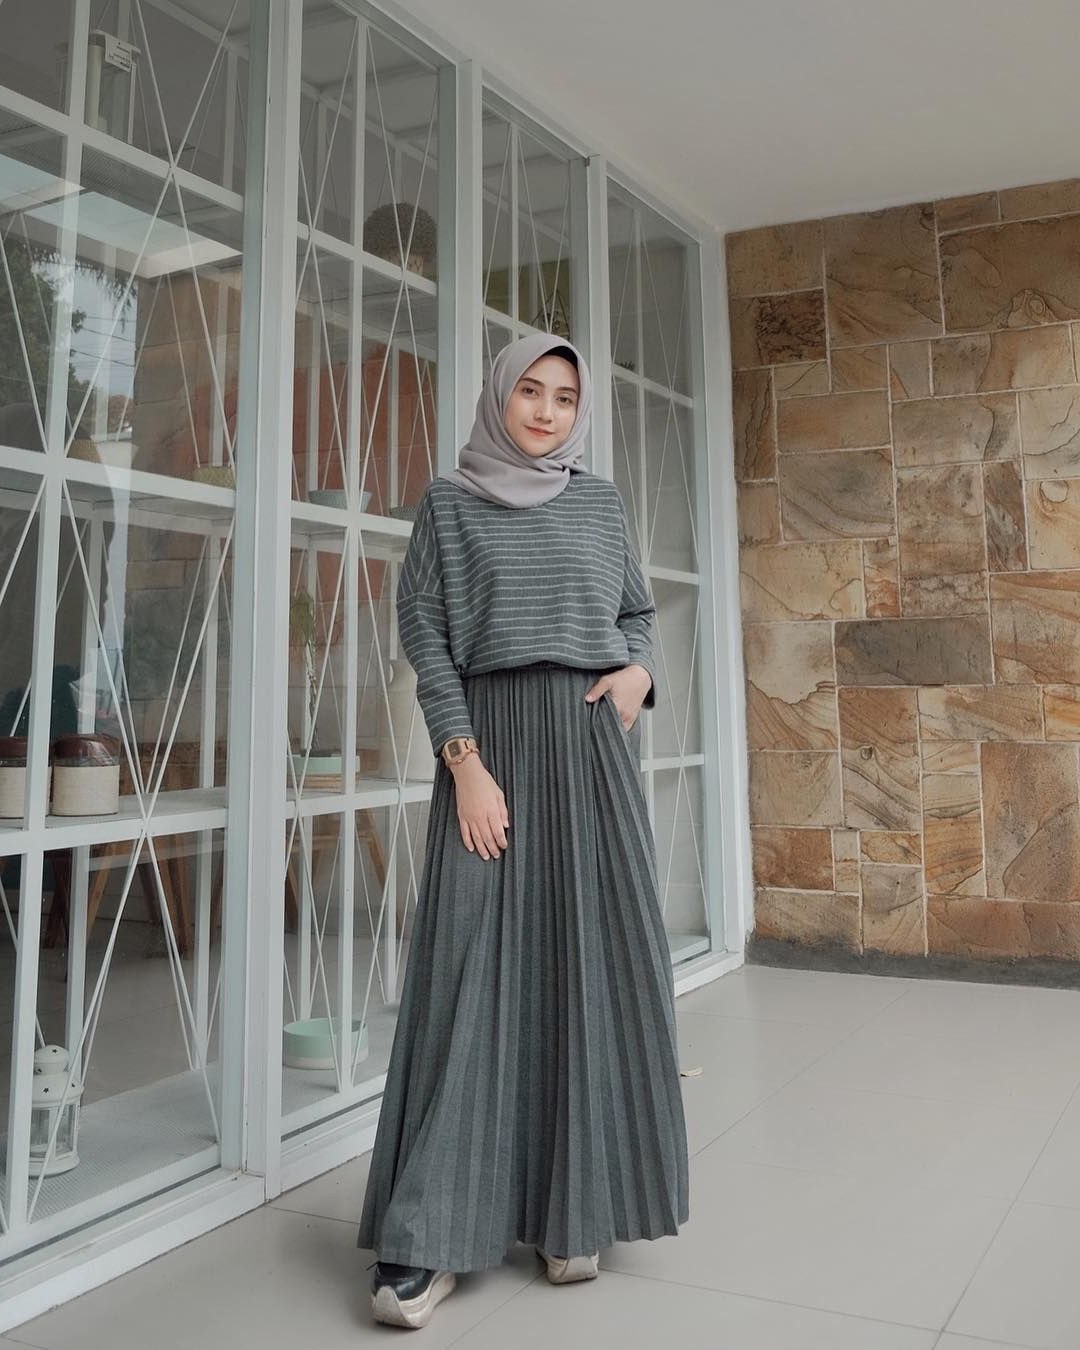 Inspirasi Baju Lebaran Casual 2019 Wddj Baju Muslim Lebaran Terbaru 2019 Dengan Gambar